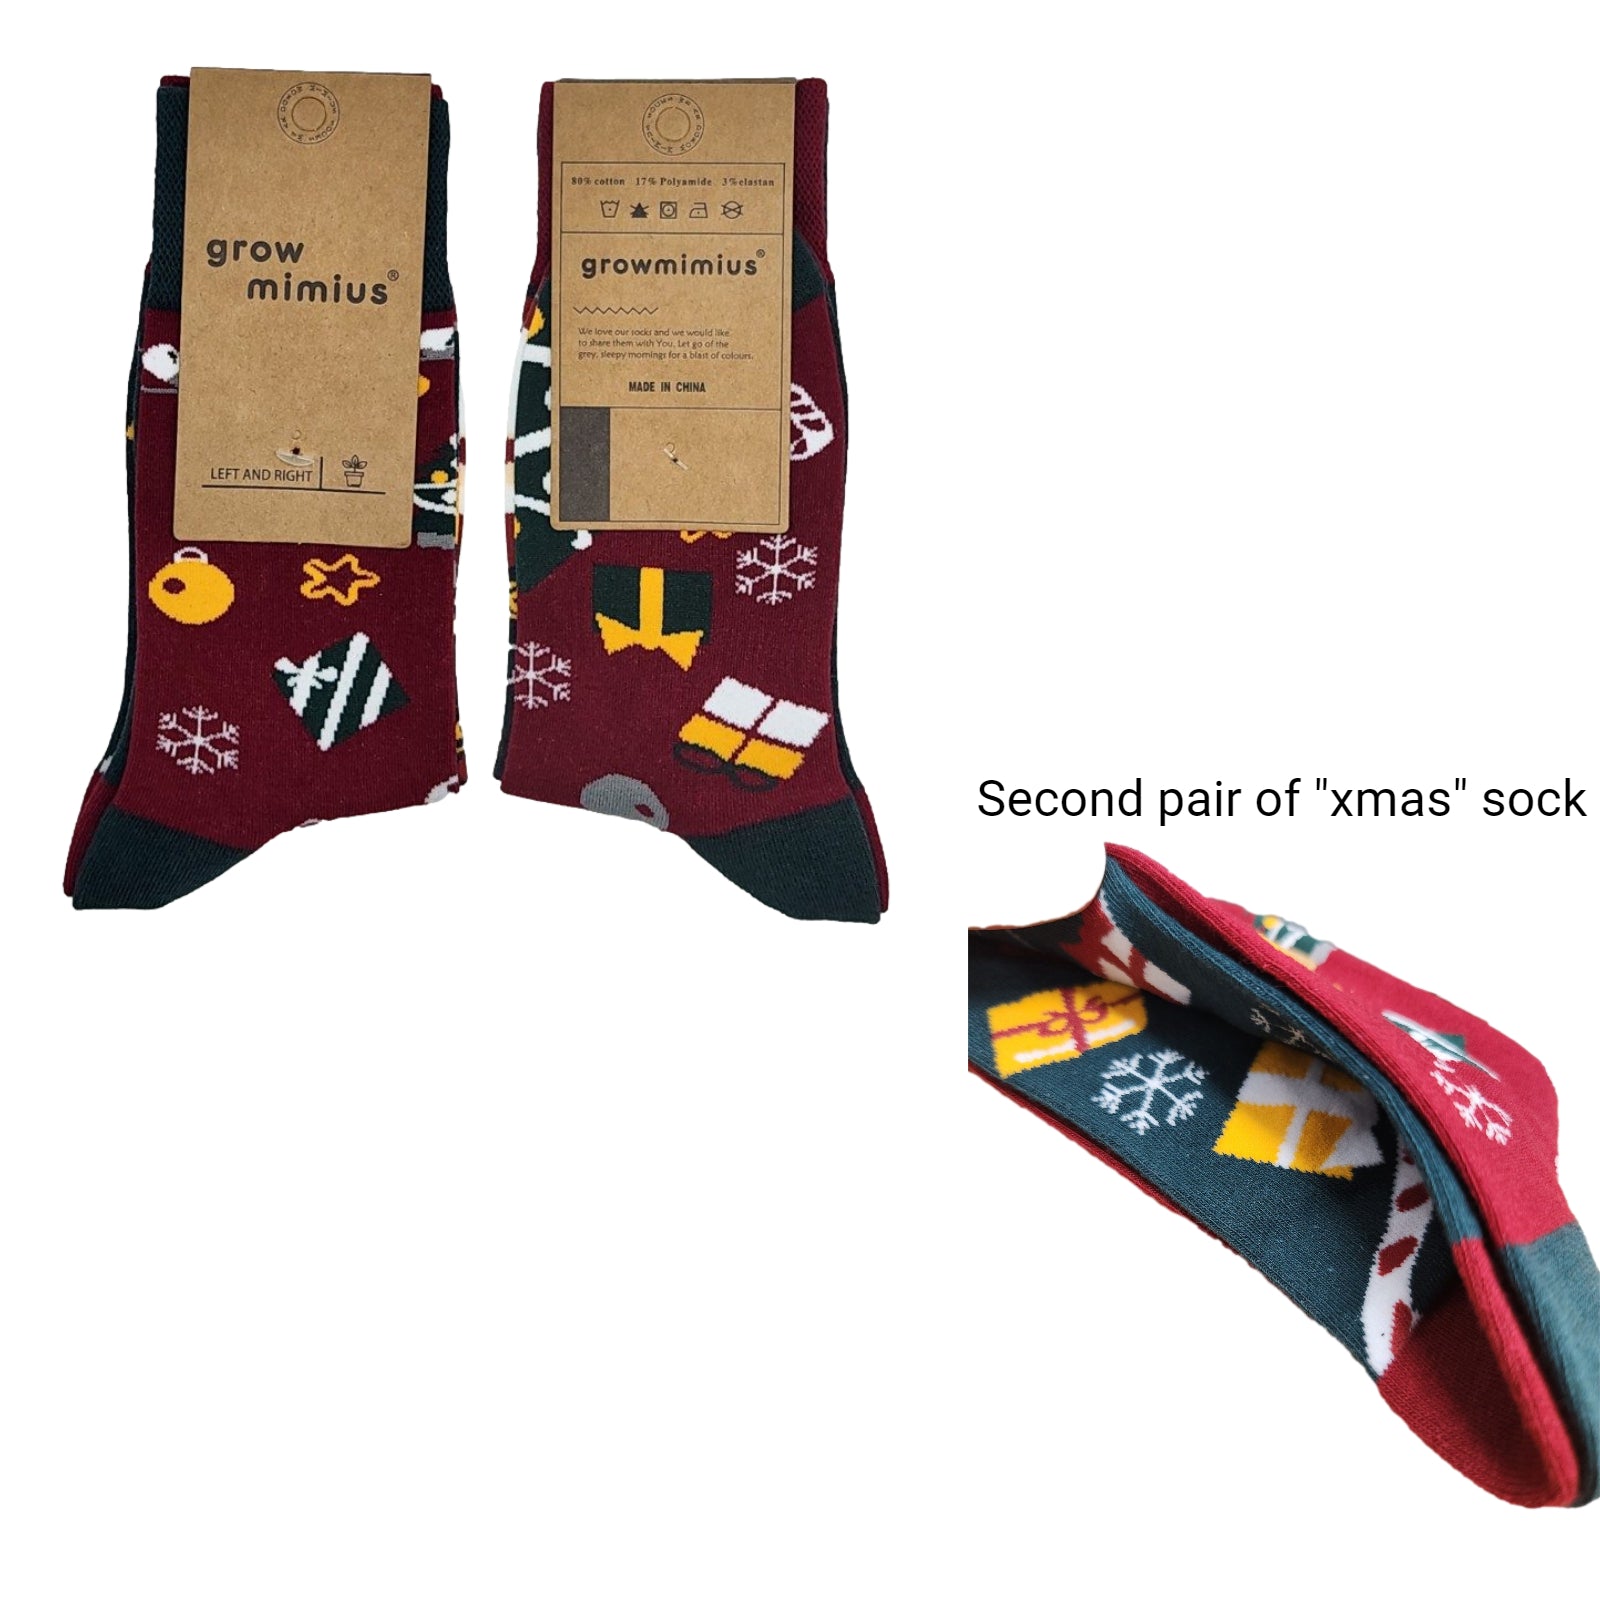 Buy 2 get 1 FREE | Grow Mimius Oddsocks Animal Food Casual Crew Ladies Unisex Novelty Socks Cute Sock - Homeware Discounts